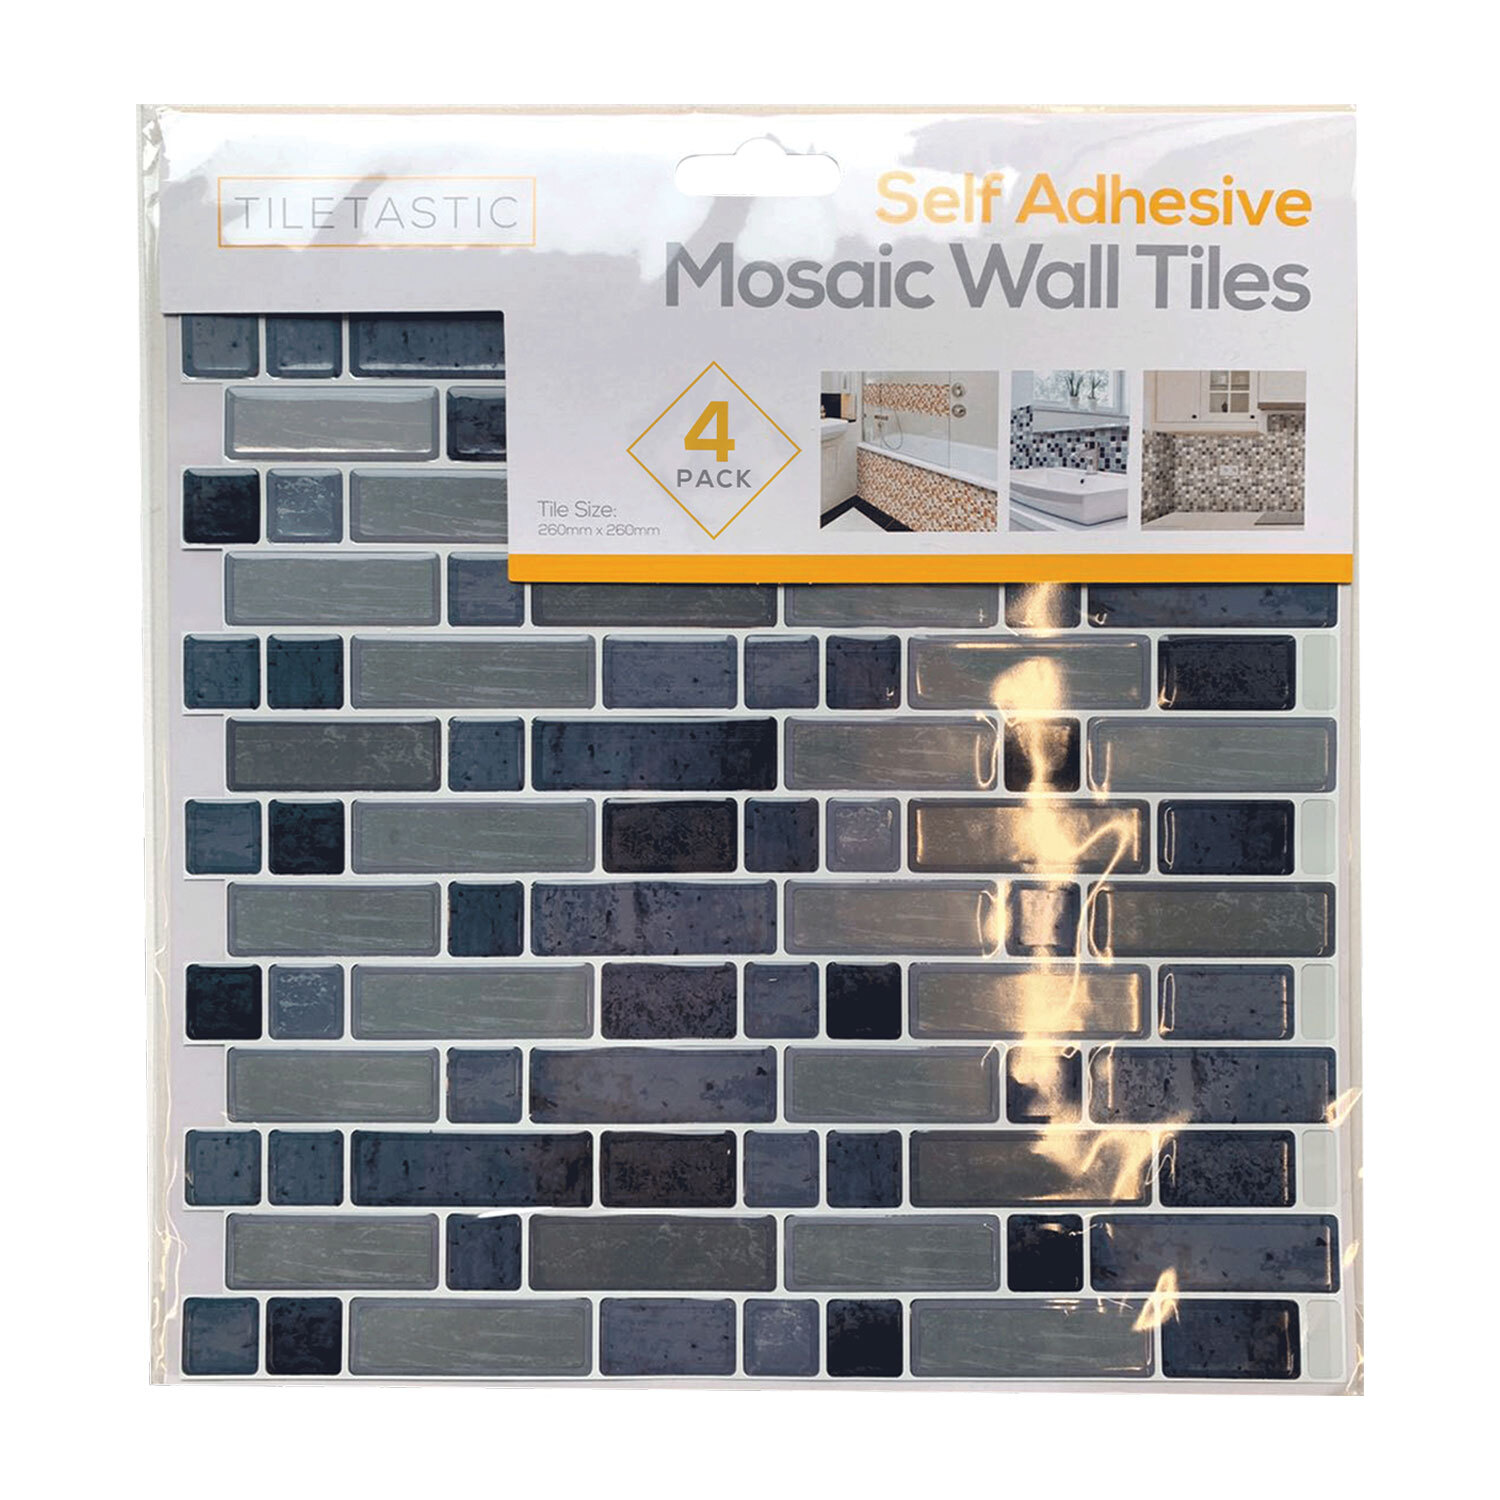 Adhesive Mosaic Wall Tile - Grey Image